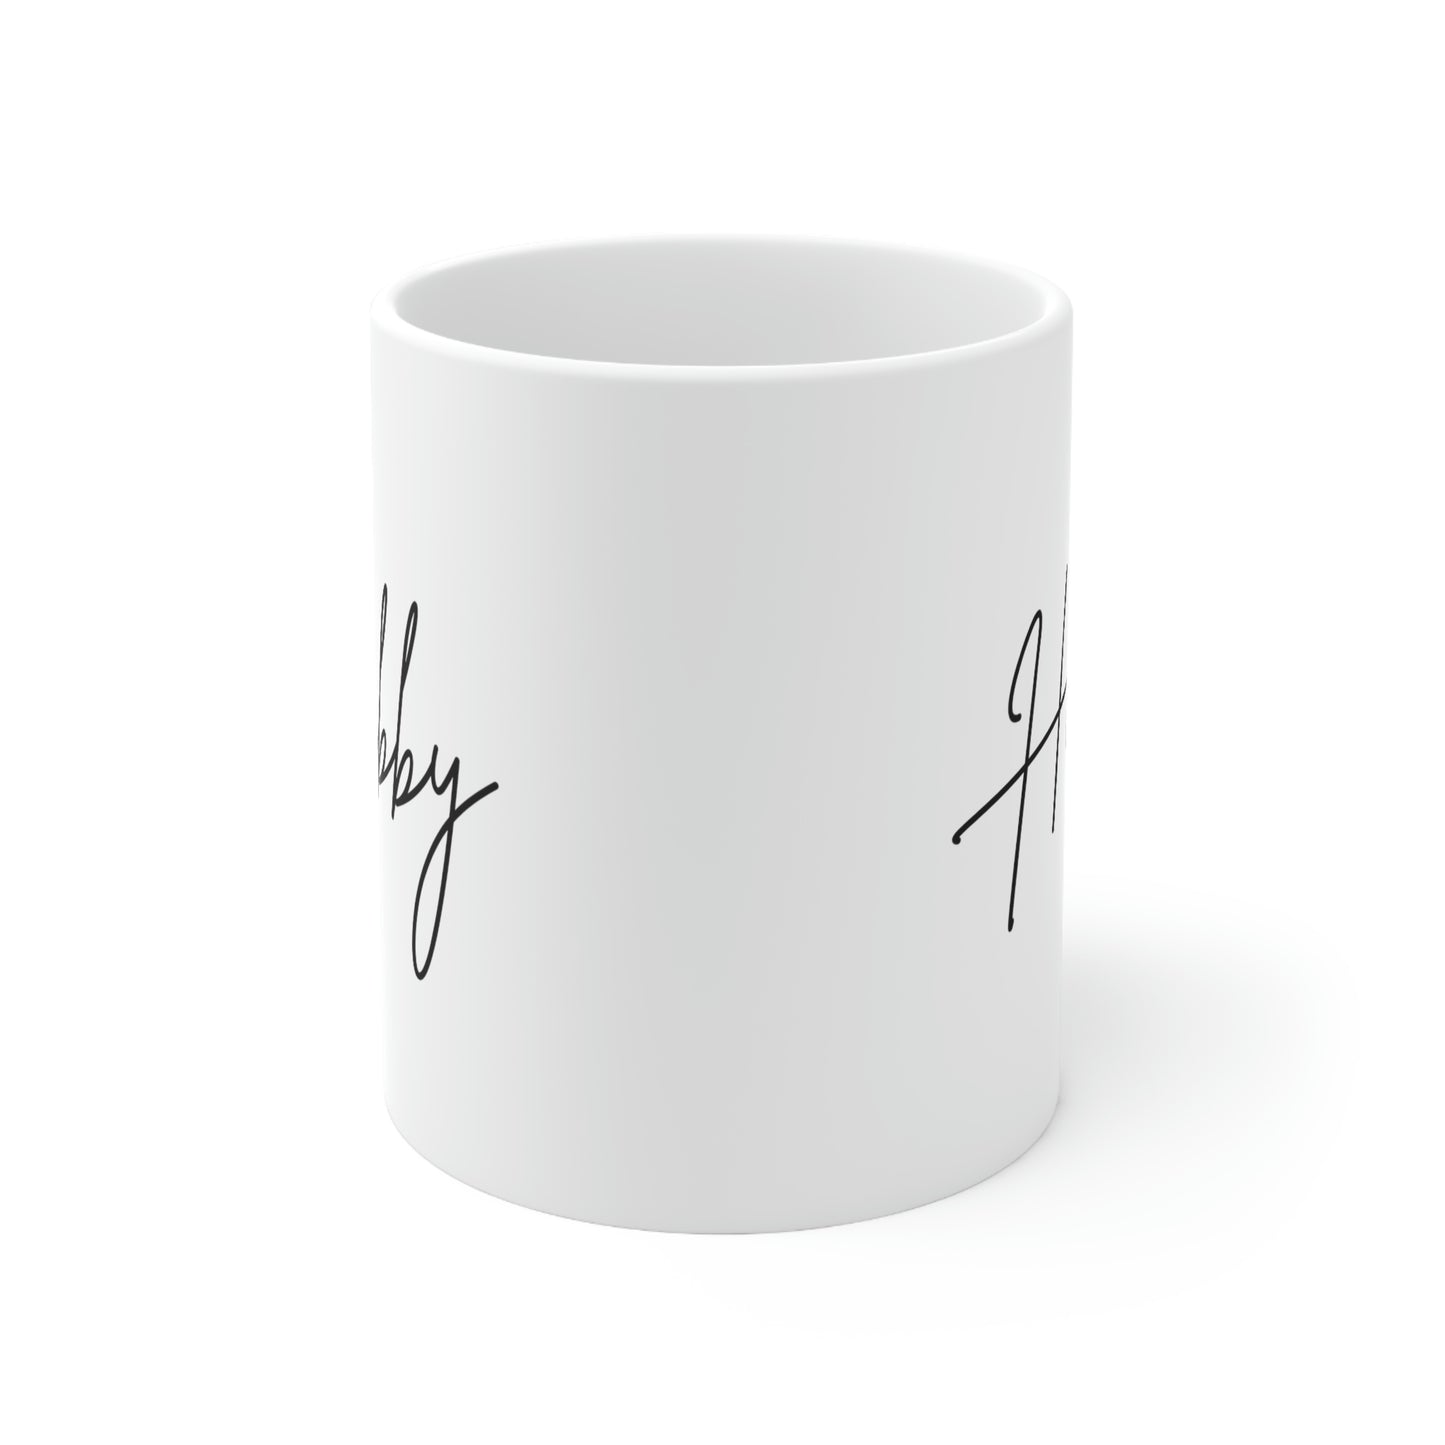 Hubby Ceramic Mug 11oz